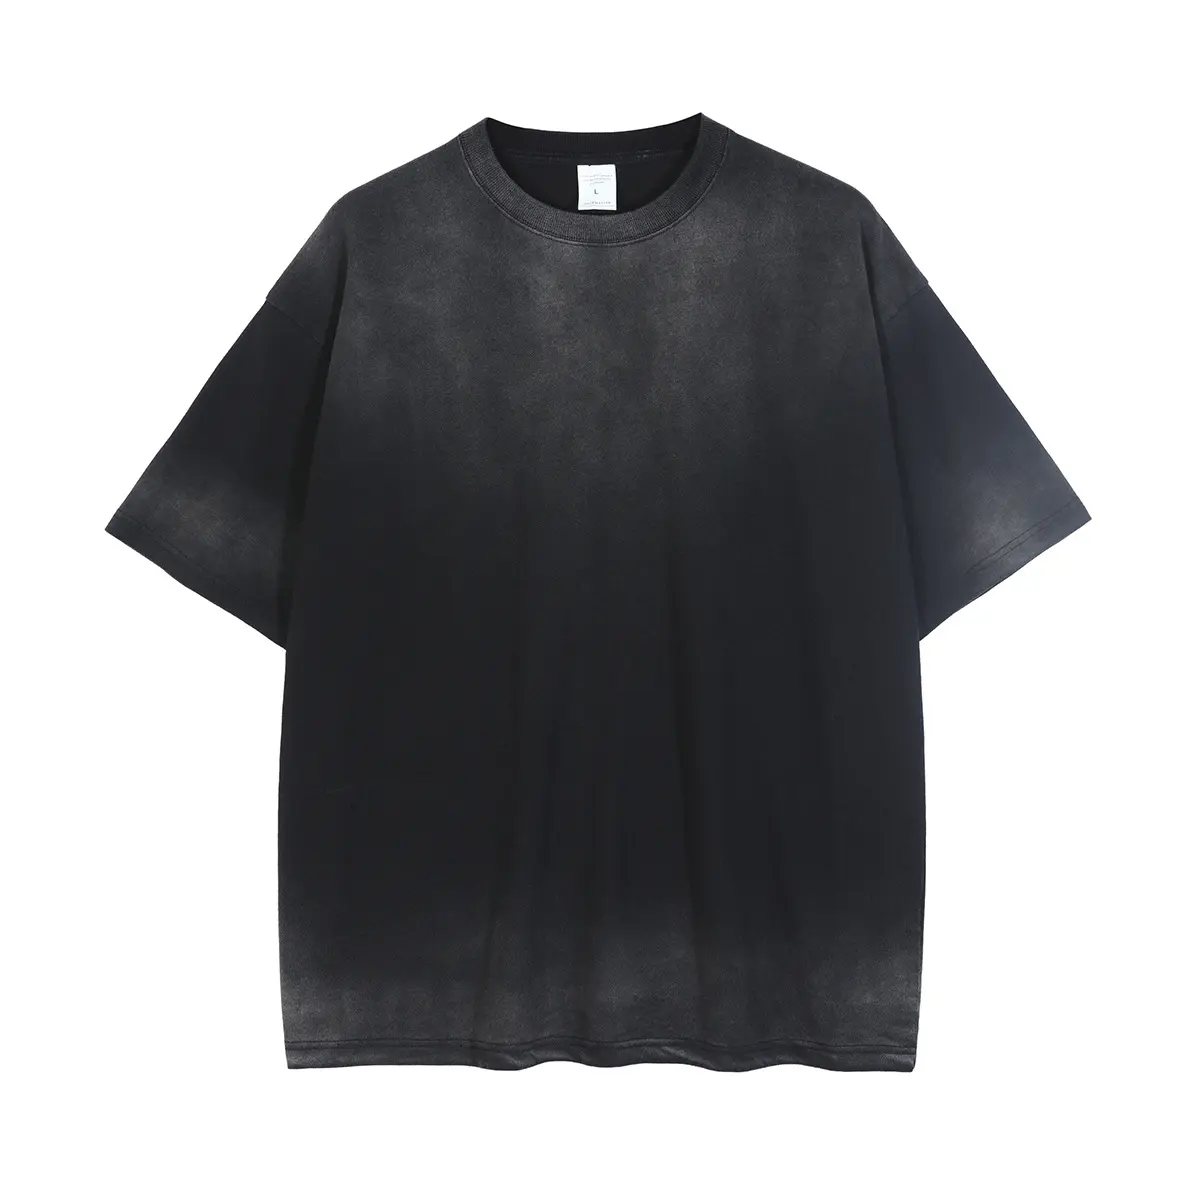 RTS 100% cotone con logo stone washed tshirt uomo custom old vintage plain blank acid wash t-shirt nera 2021